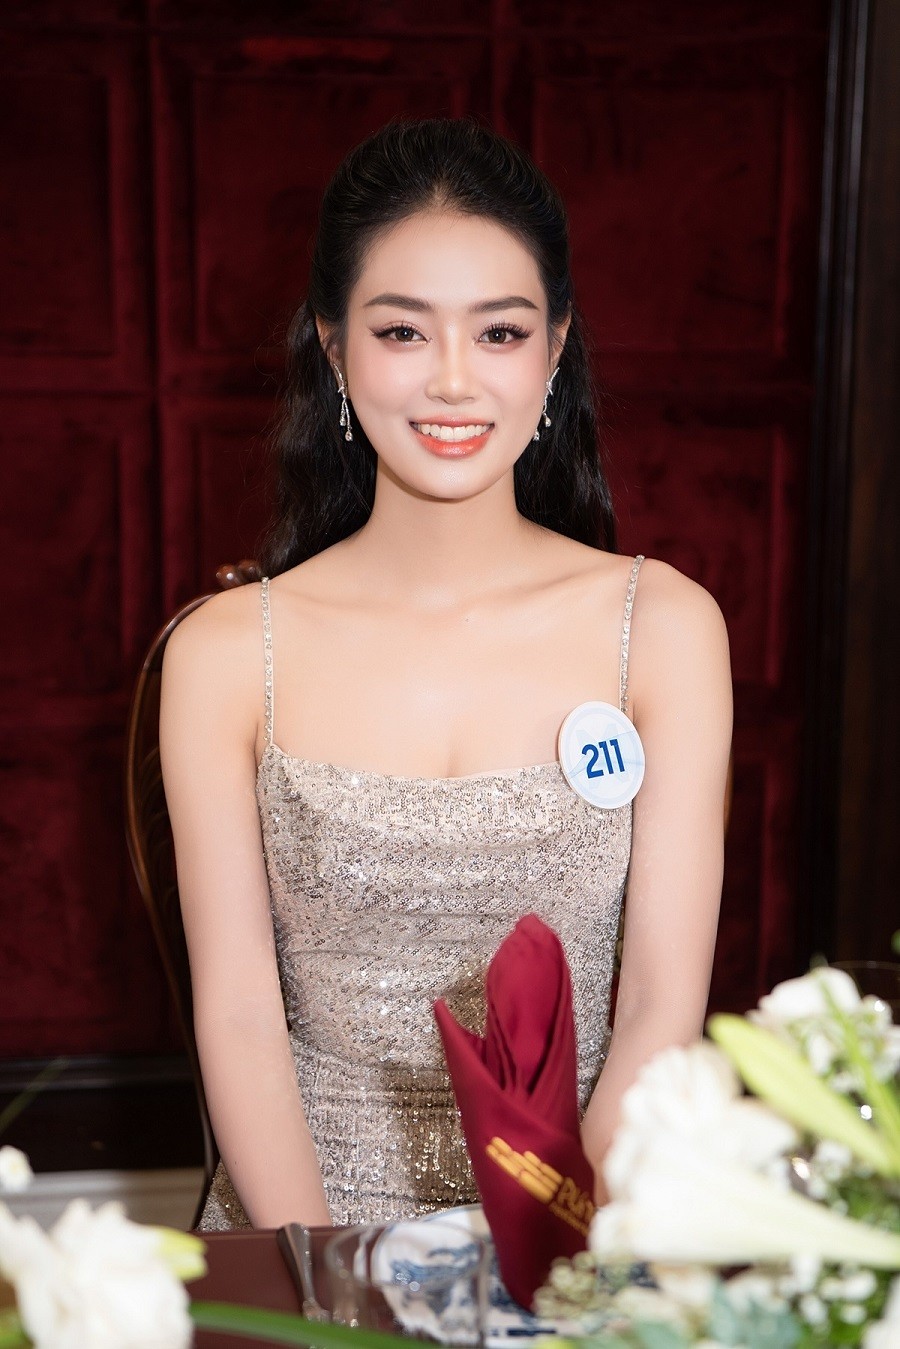 Bùi Khánh Linh gây chú ý ở cuộc thi năm nay vì là gương mặt quen, từng vào top 10 Miss World Vietnam mùa trước.